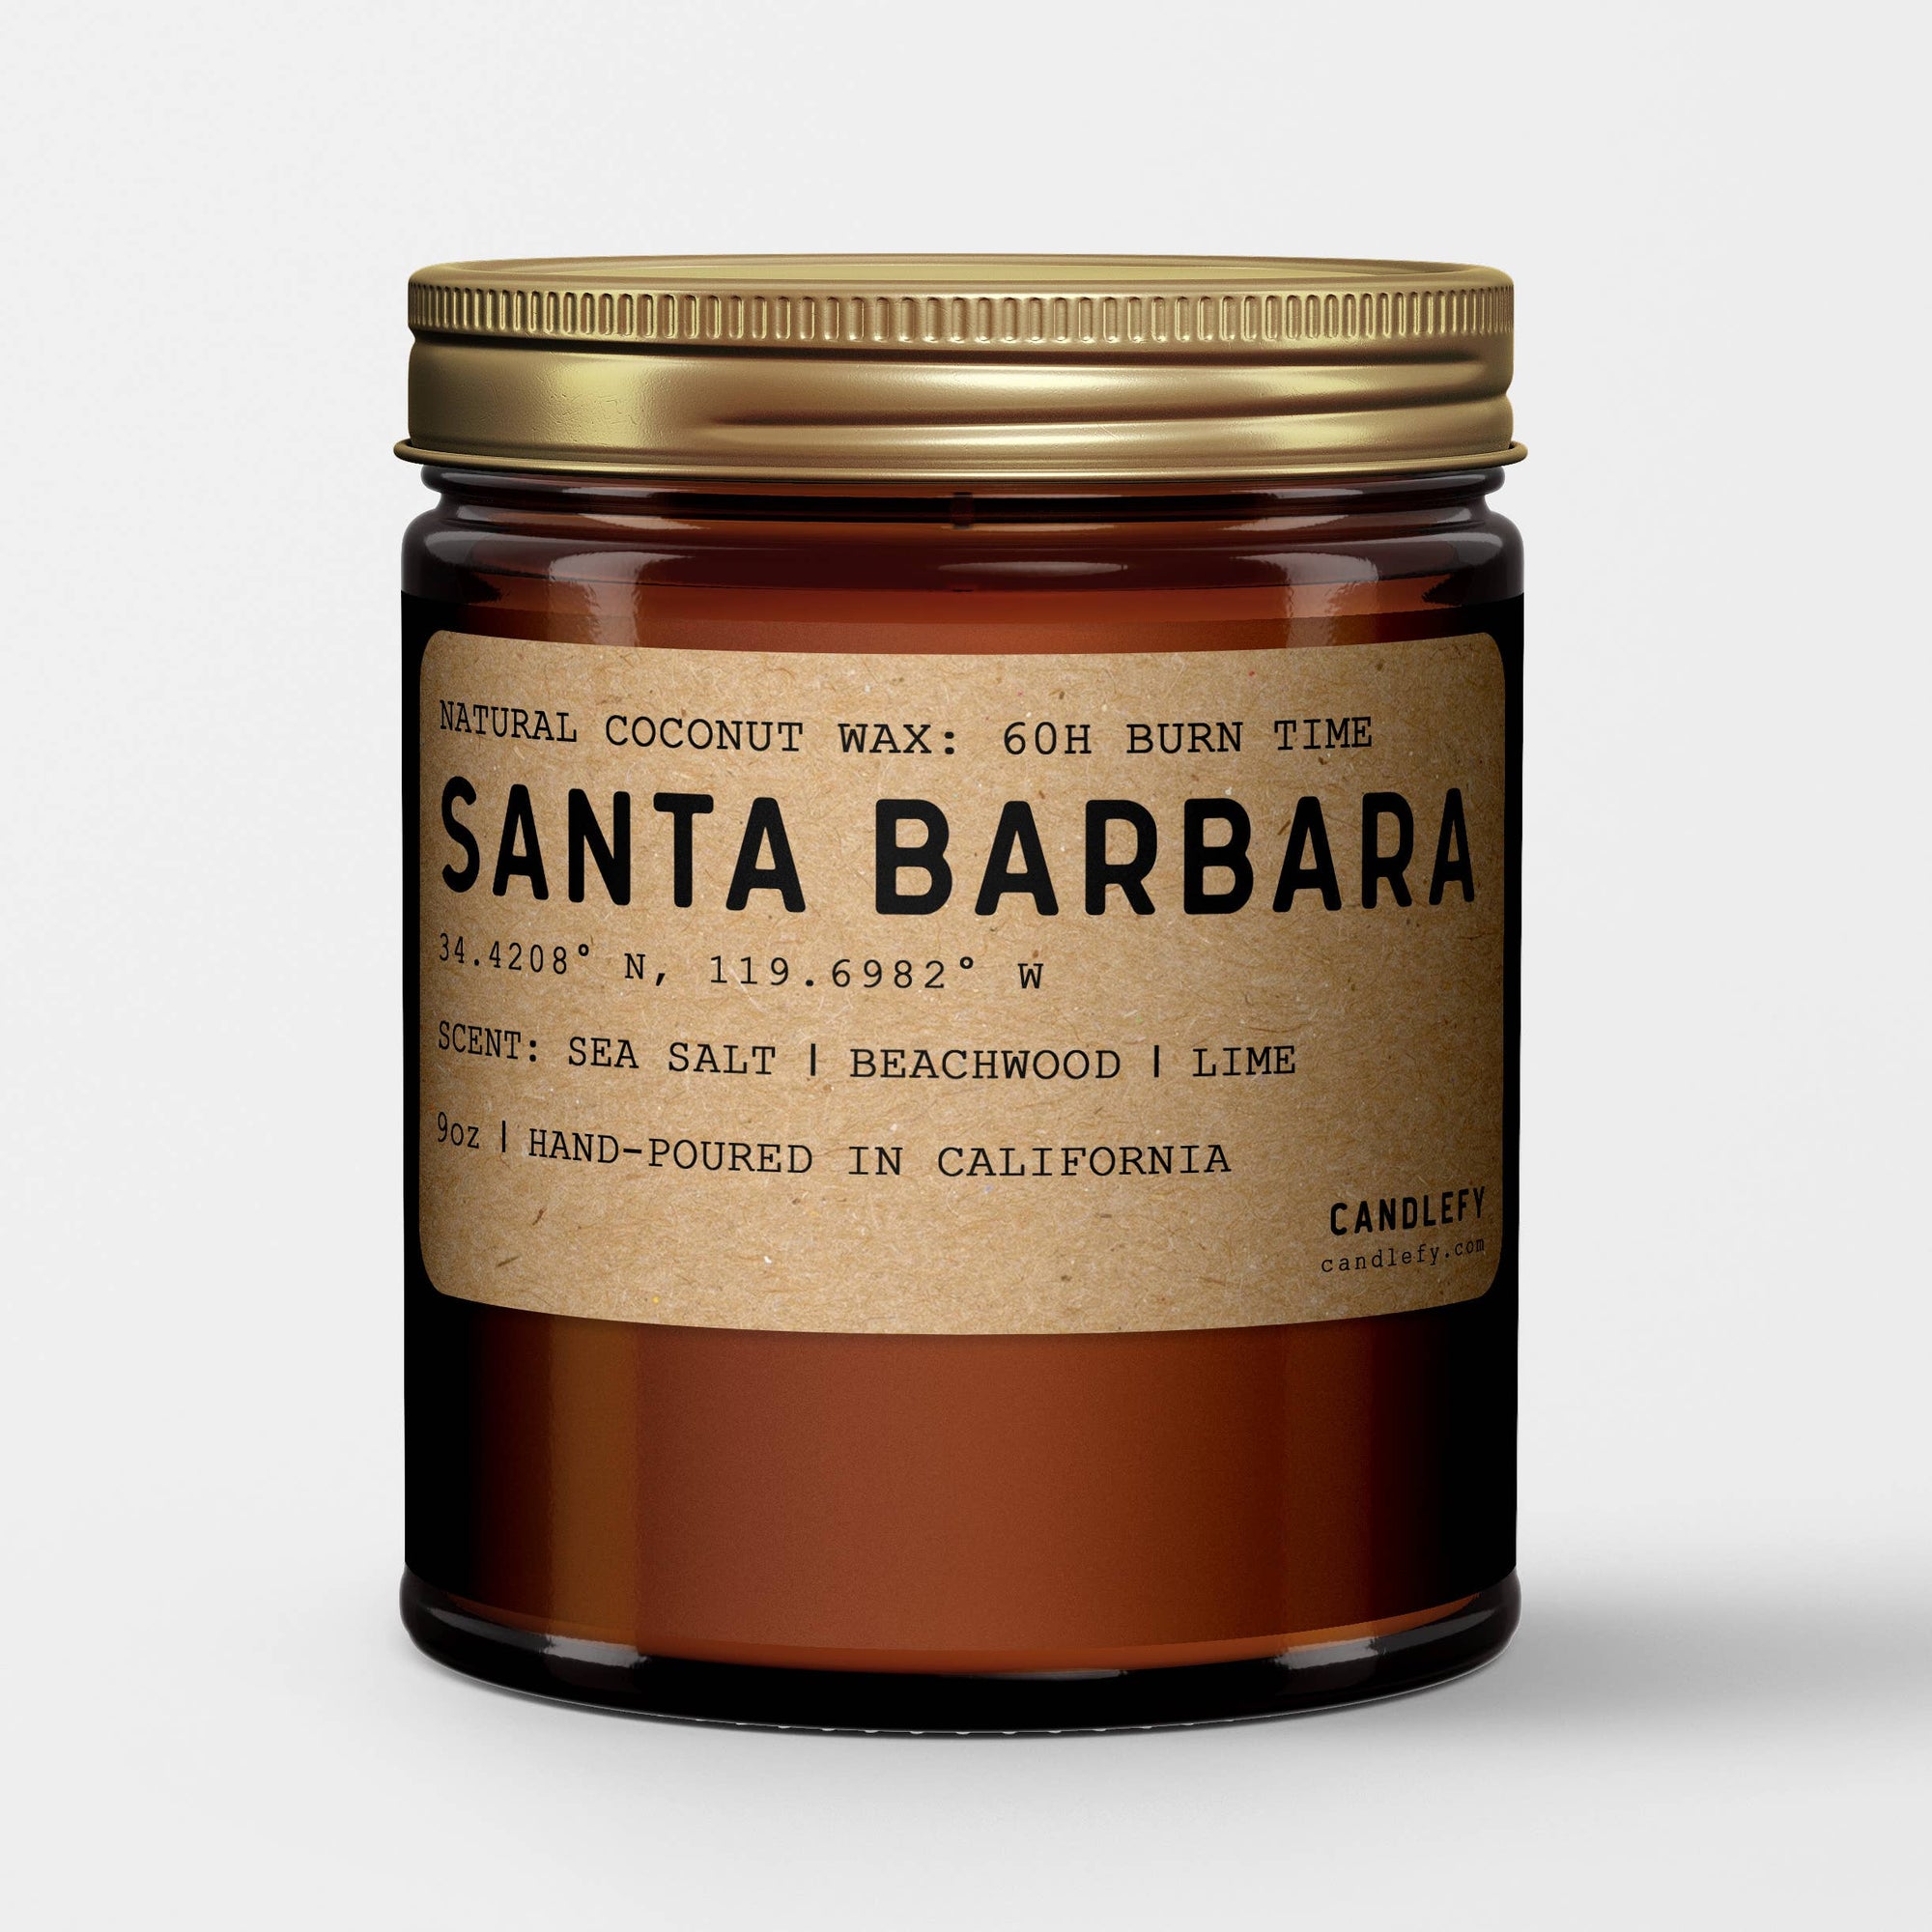 Santa Barbara, California Scented Candle in Amber Jar: 8oz